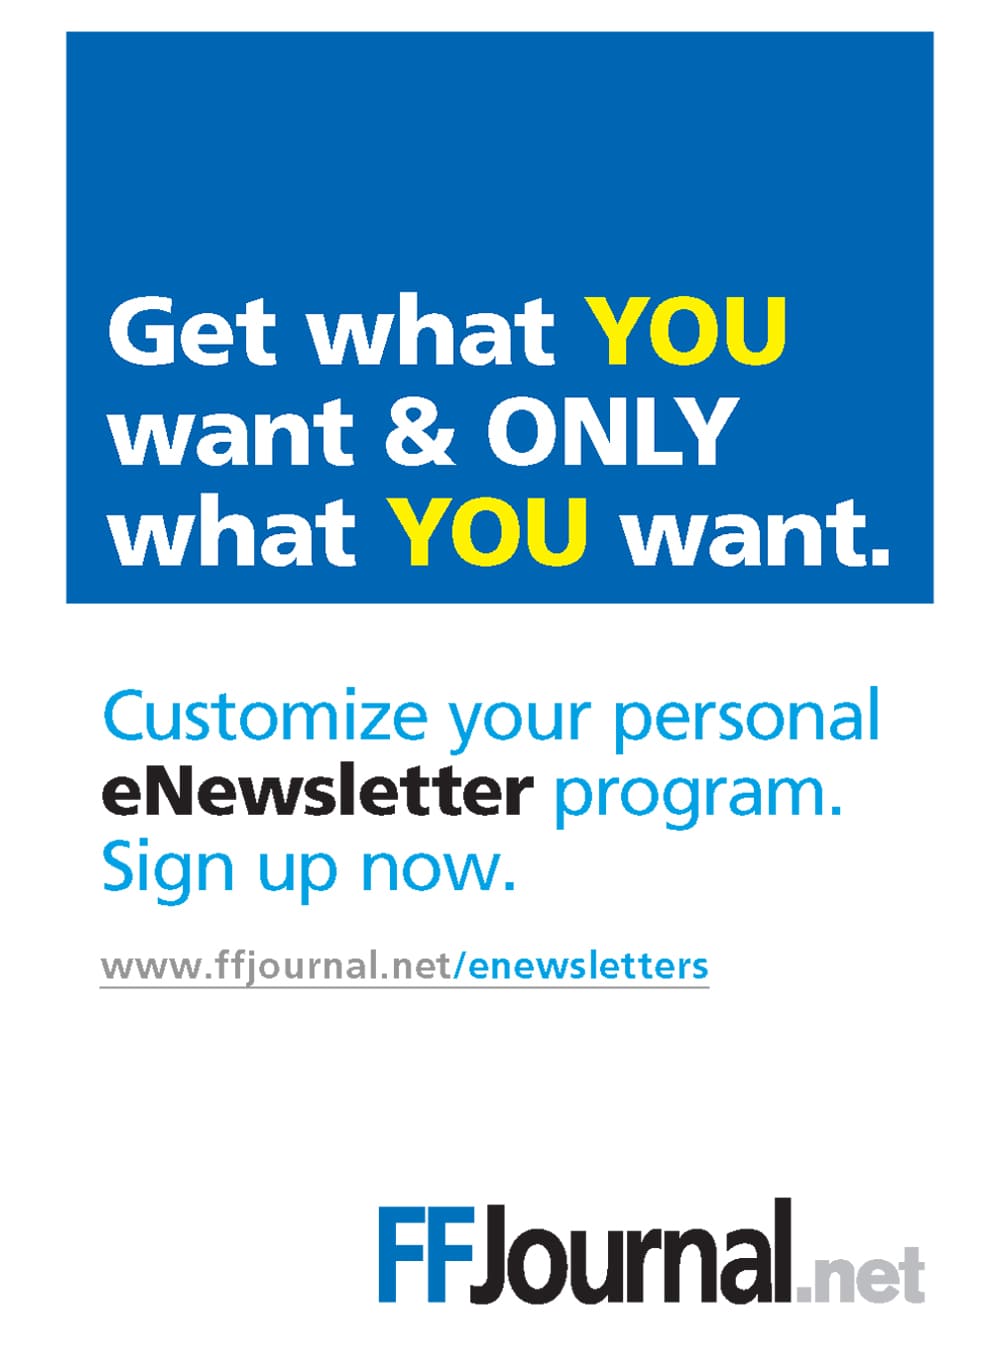 FF Journal Advertisement: FFI Journal eNewsletter